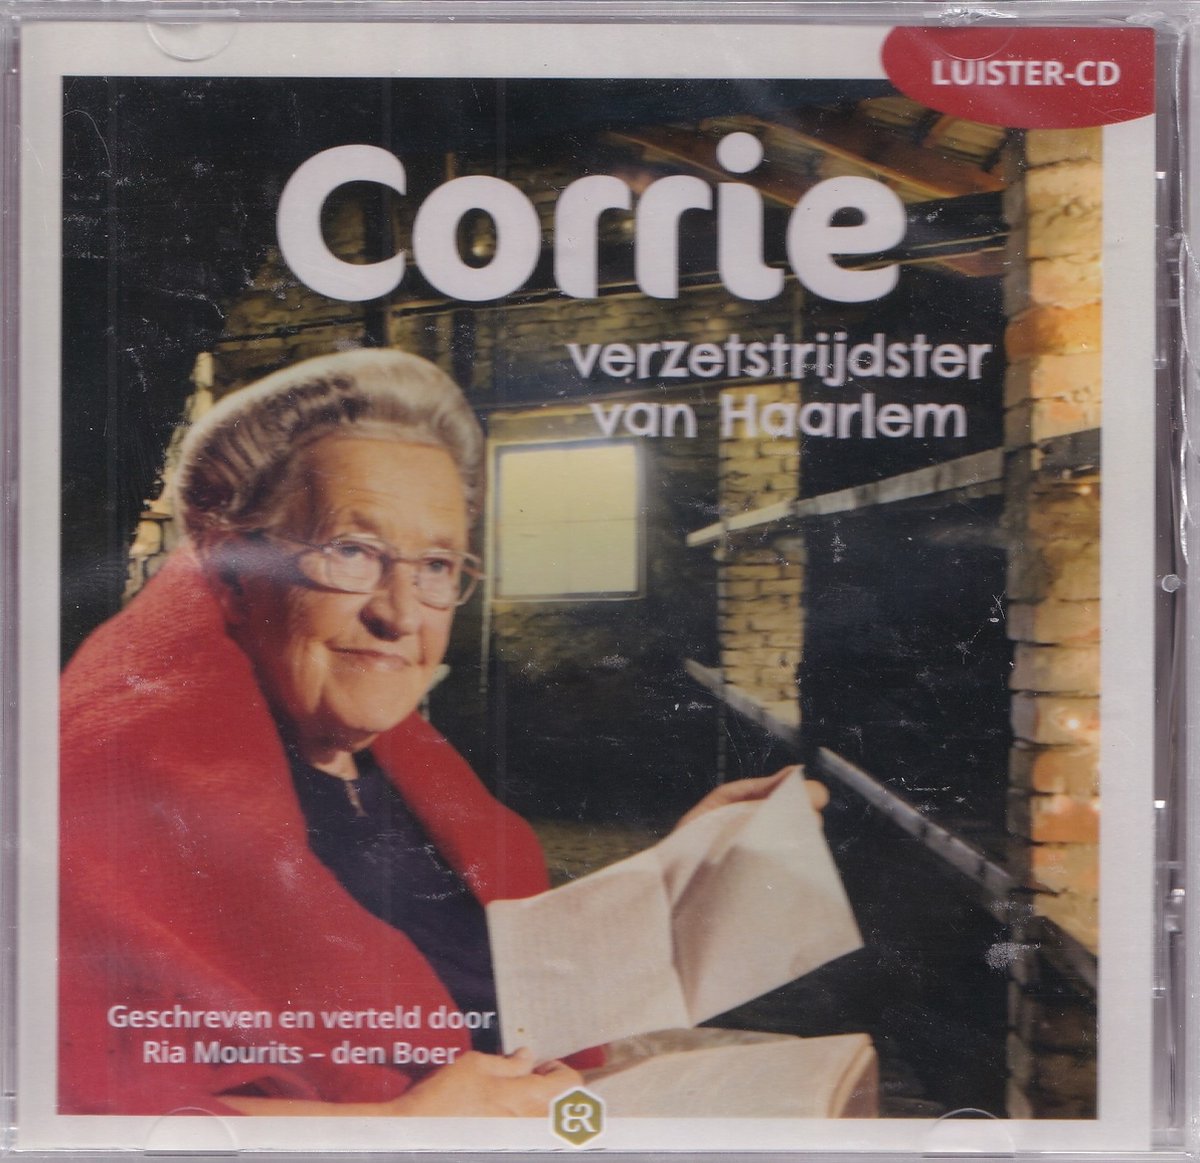 Corrie verzetstrijdster van Haarlem